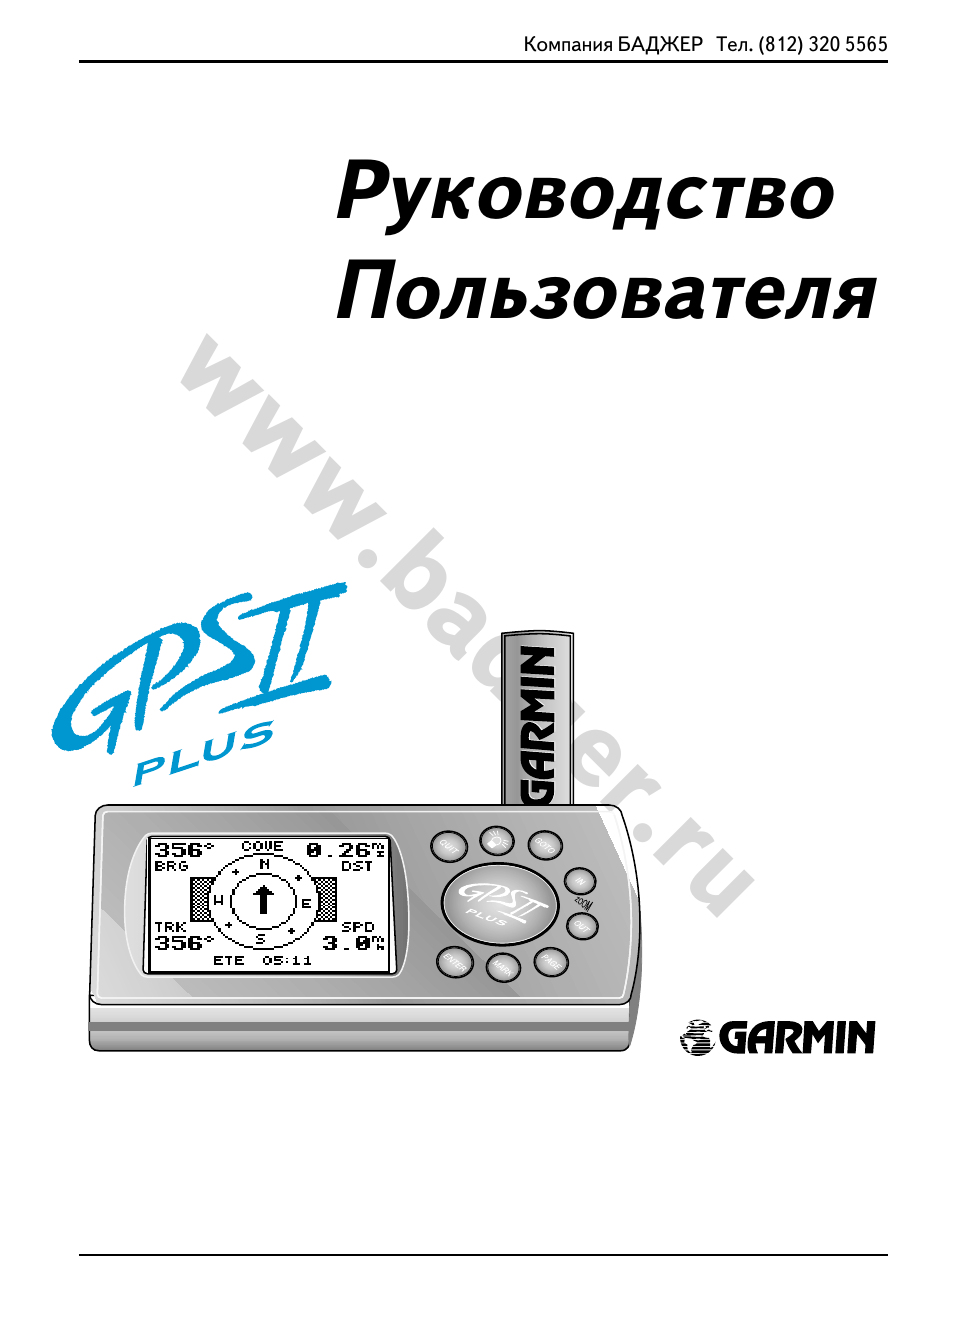 Инструкция по эксплуатации Garmin GPSII Plus | 61 cтраница